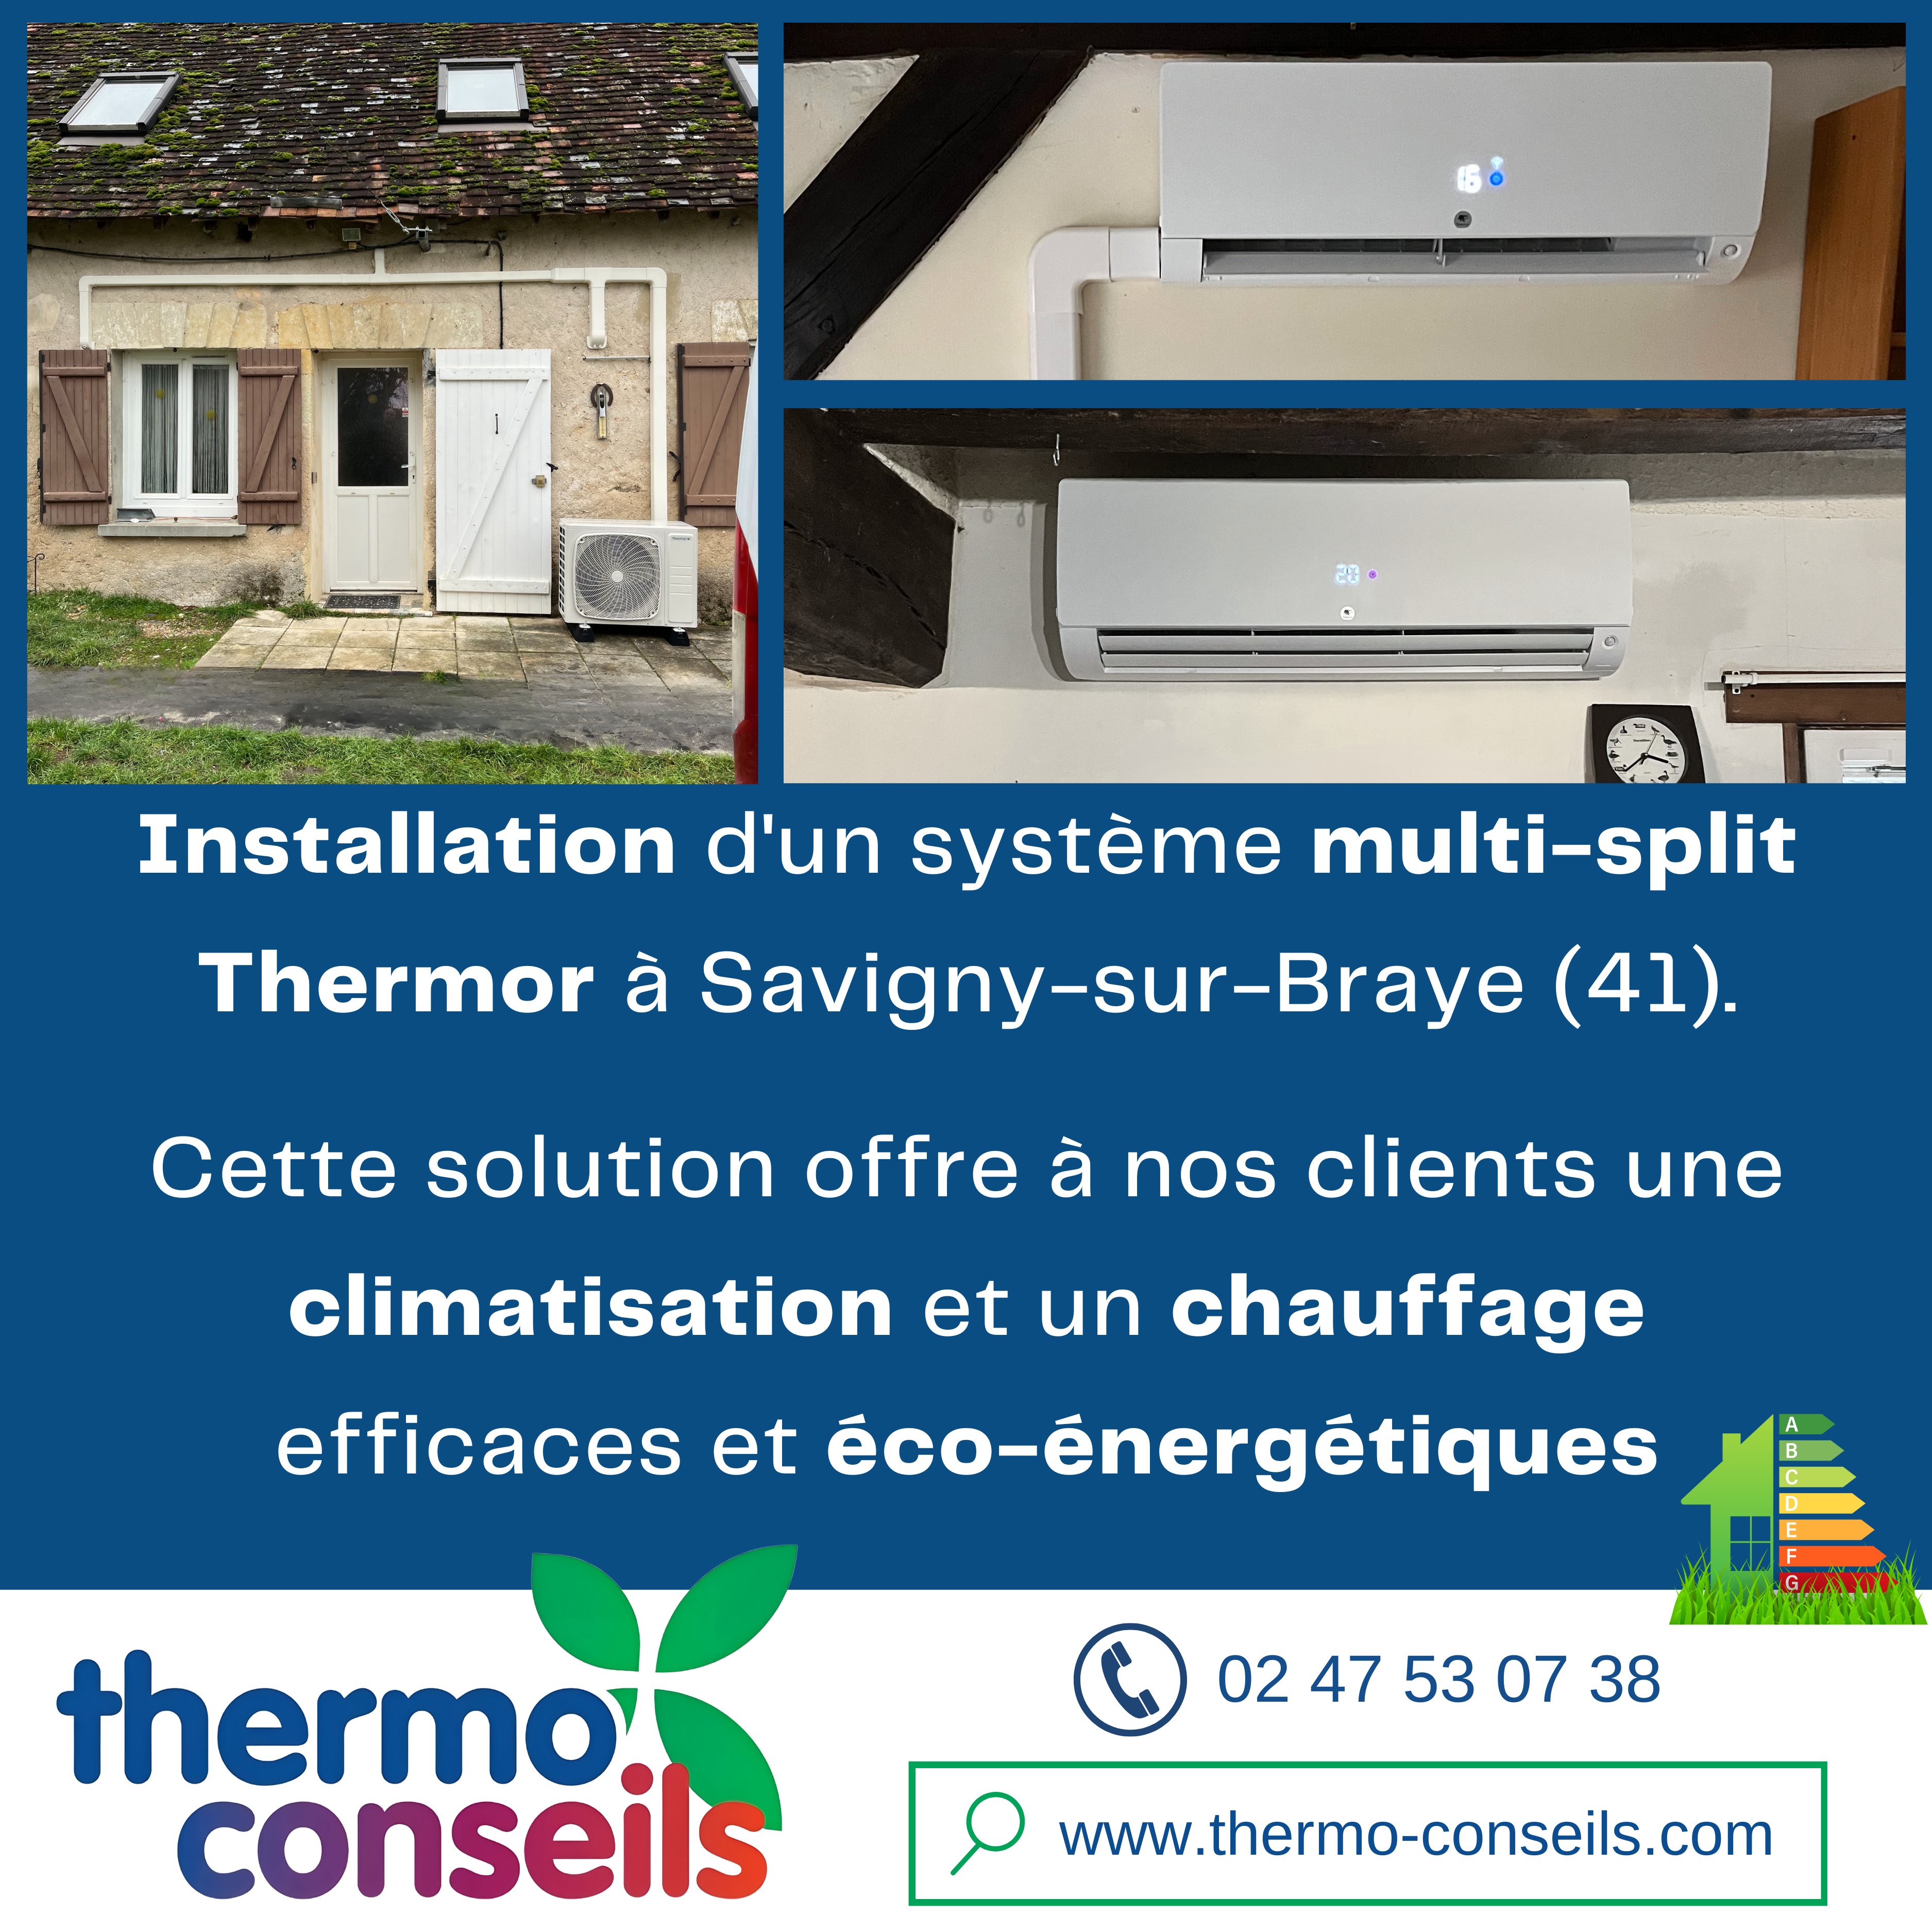 Installation d'un système multi-split Thermor à Savigny-sur-Braye dans le Loir-et-Cher (41)